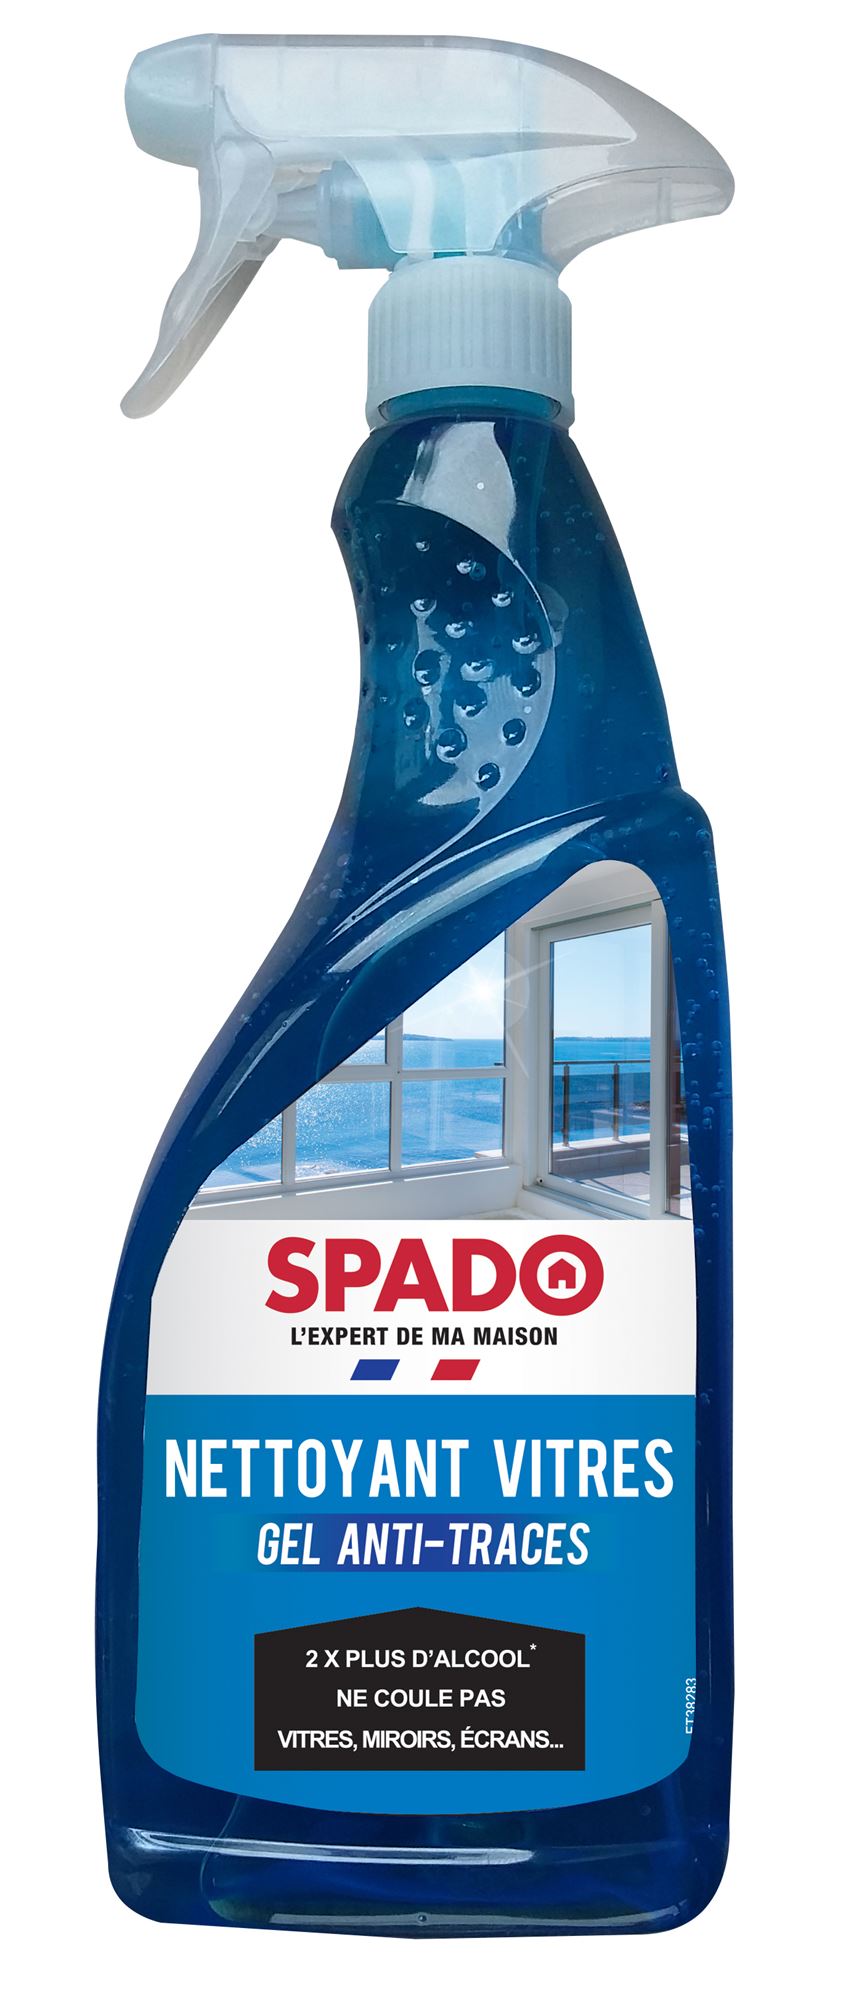 Spado : fabricant français de produits d'entretien